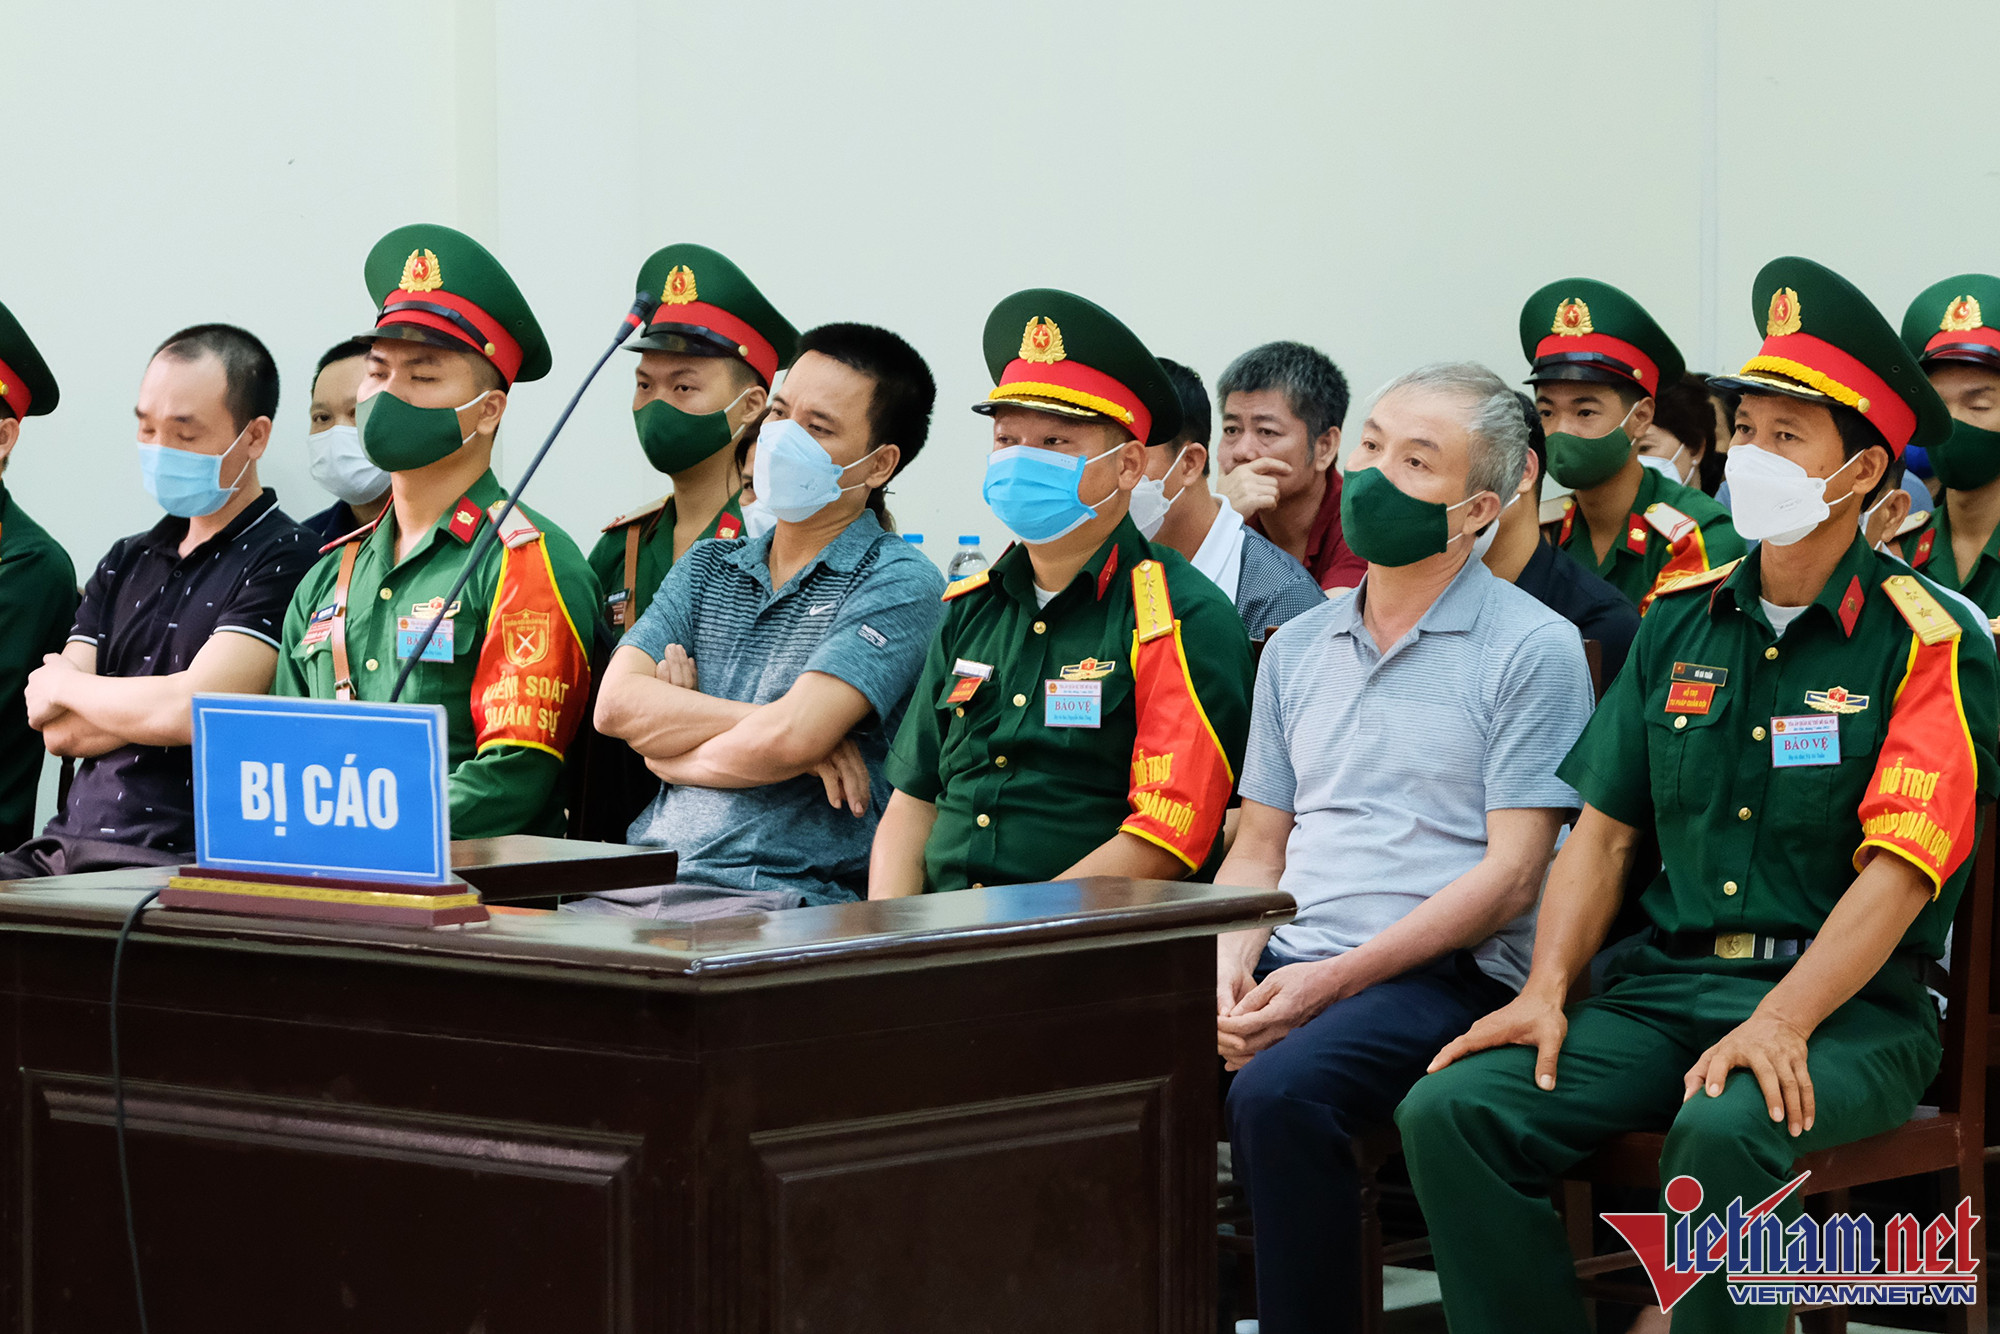 Bảo kê cho trùm buôn lậu, hai cựu Thiếu tướng quân đội nhận 27 năm tù